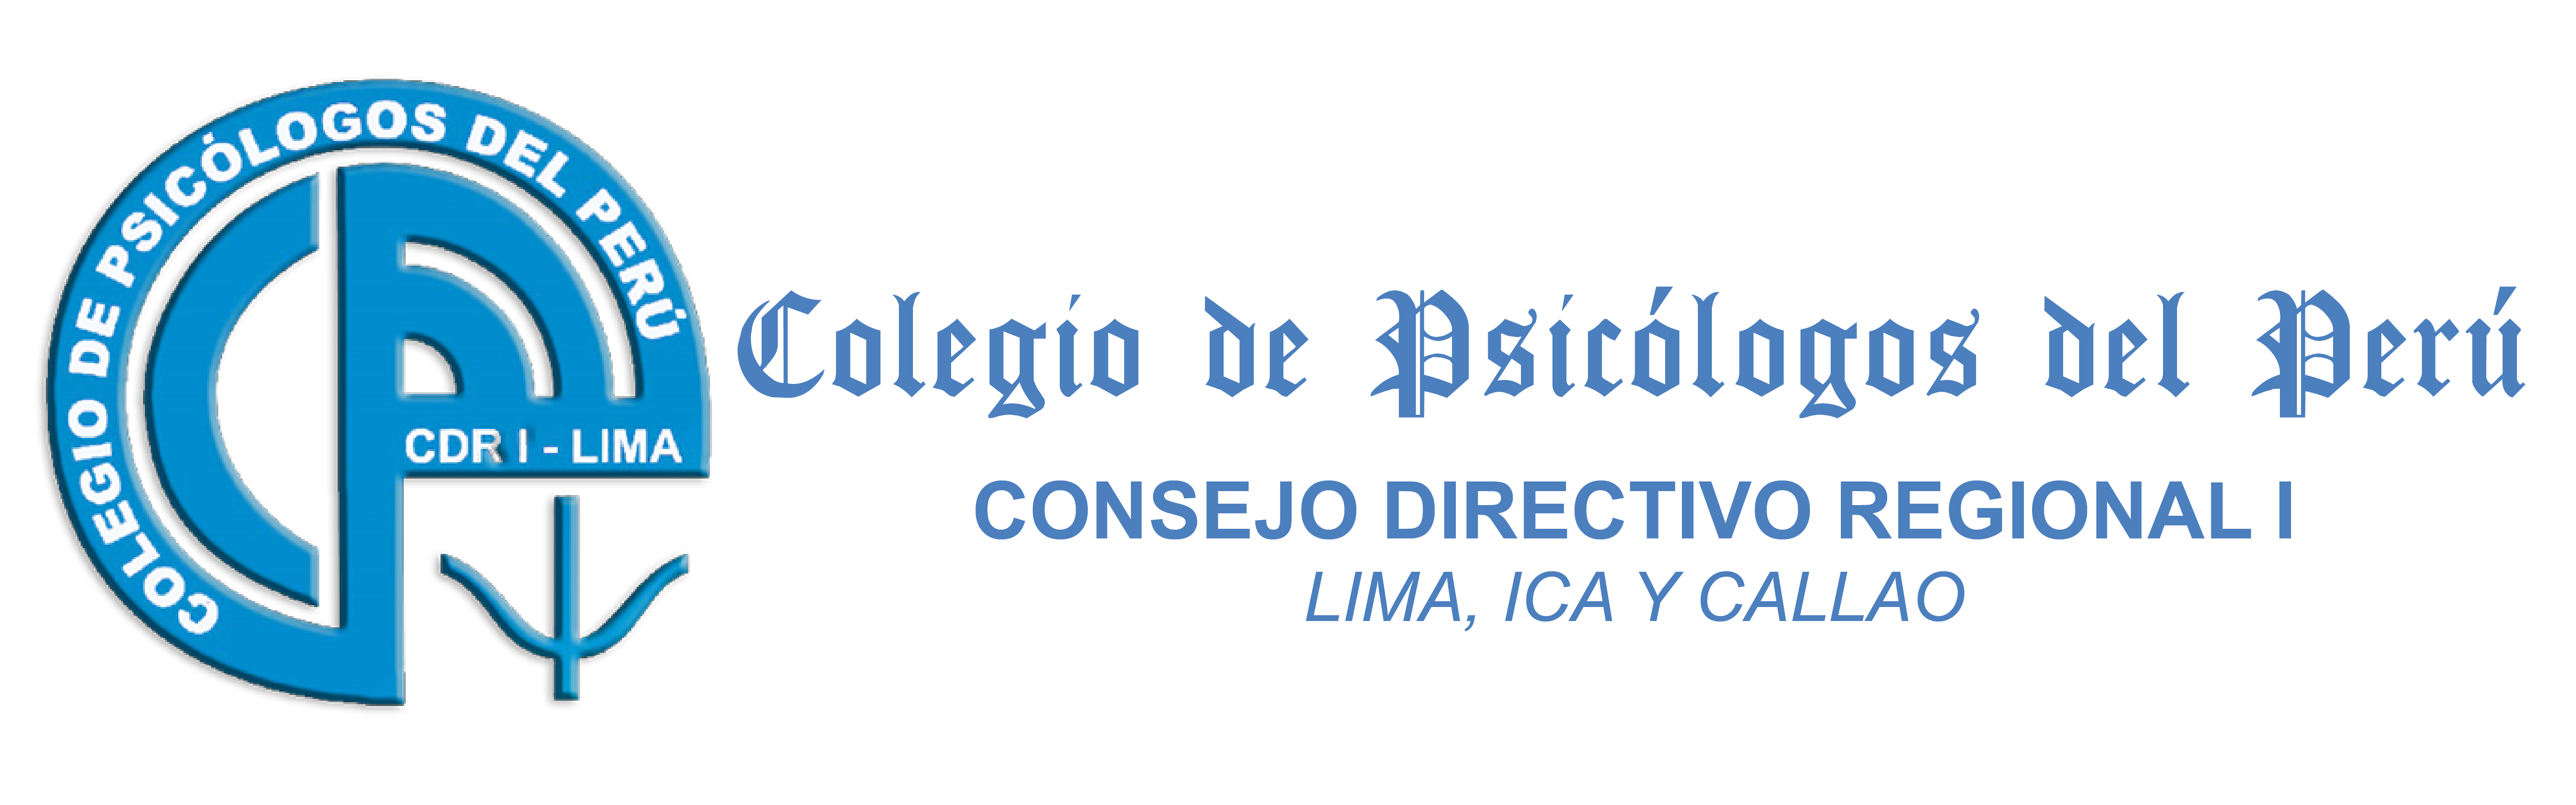 Colegio de Psicólogos del Perú - CDR I